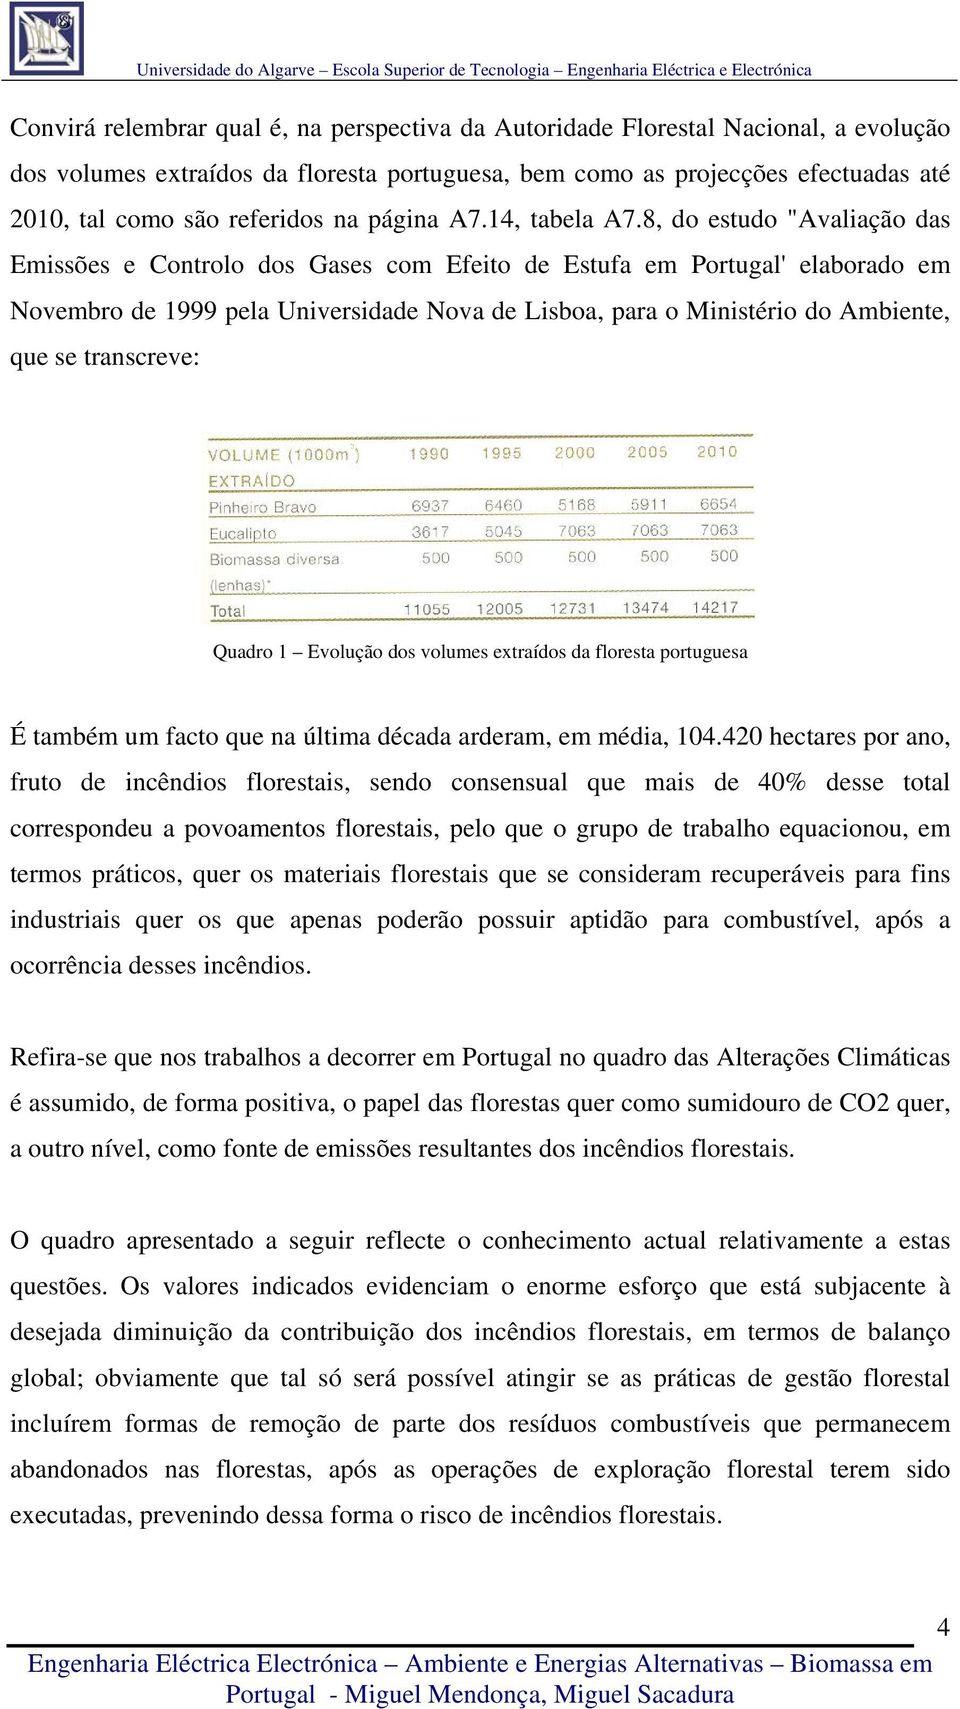 8, do estudo "Avaliação das Emissões e Controlo dos Gases com Efeito de Estufa em Portugal' elaborado em Novembro de 1999 pela Universidade Nova de Lisboa, para o Ministério do Ambiente, que se